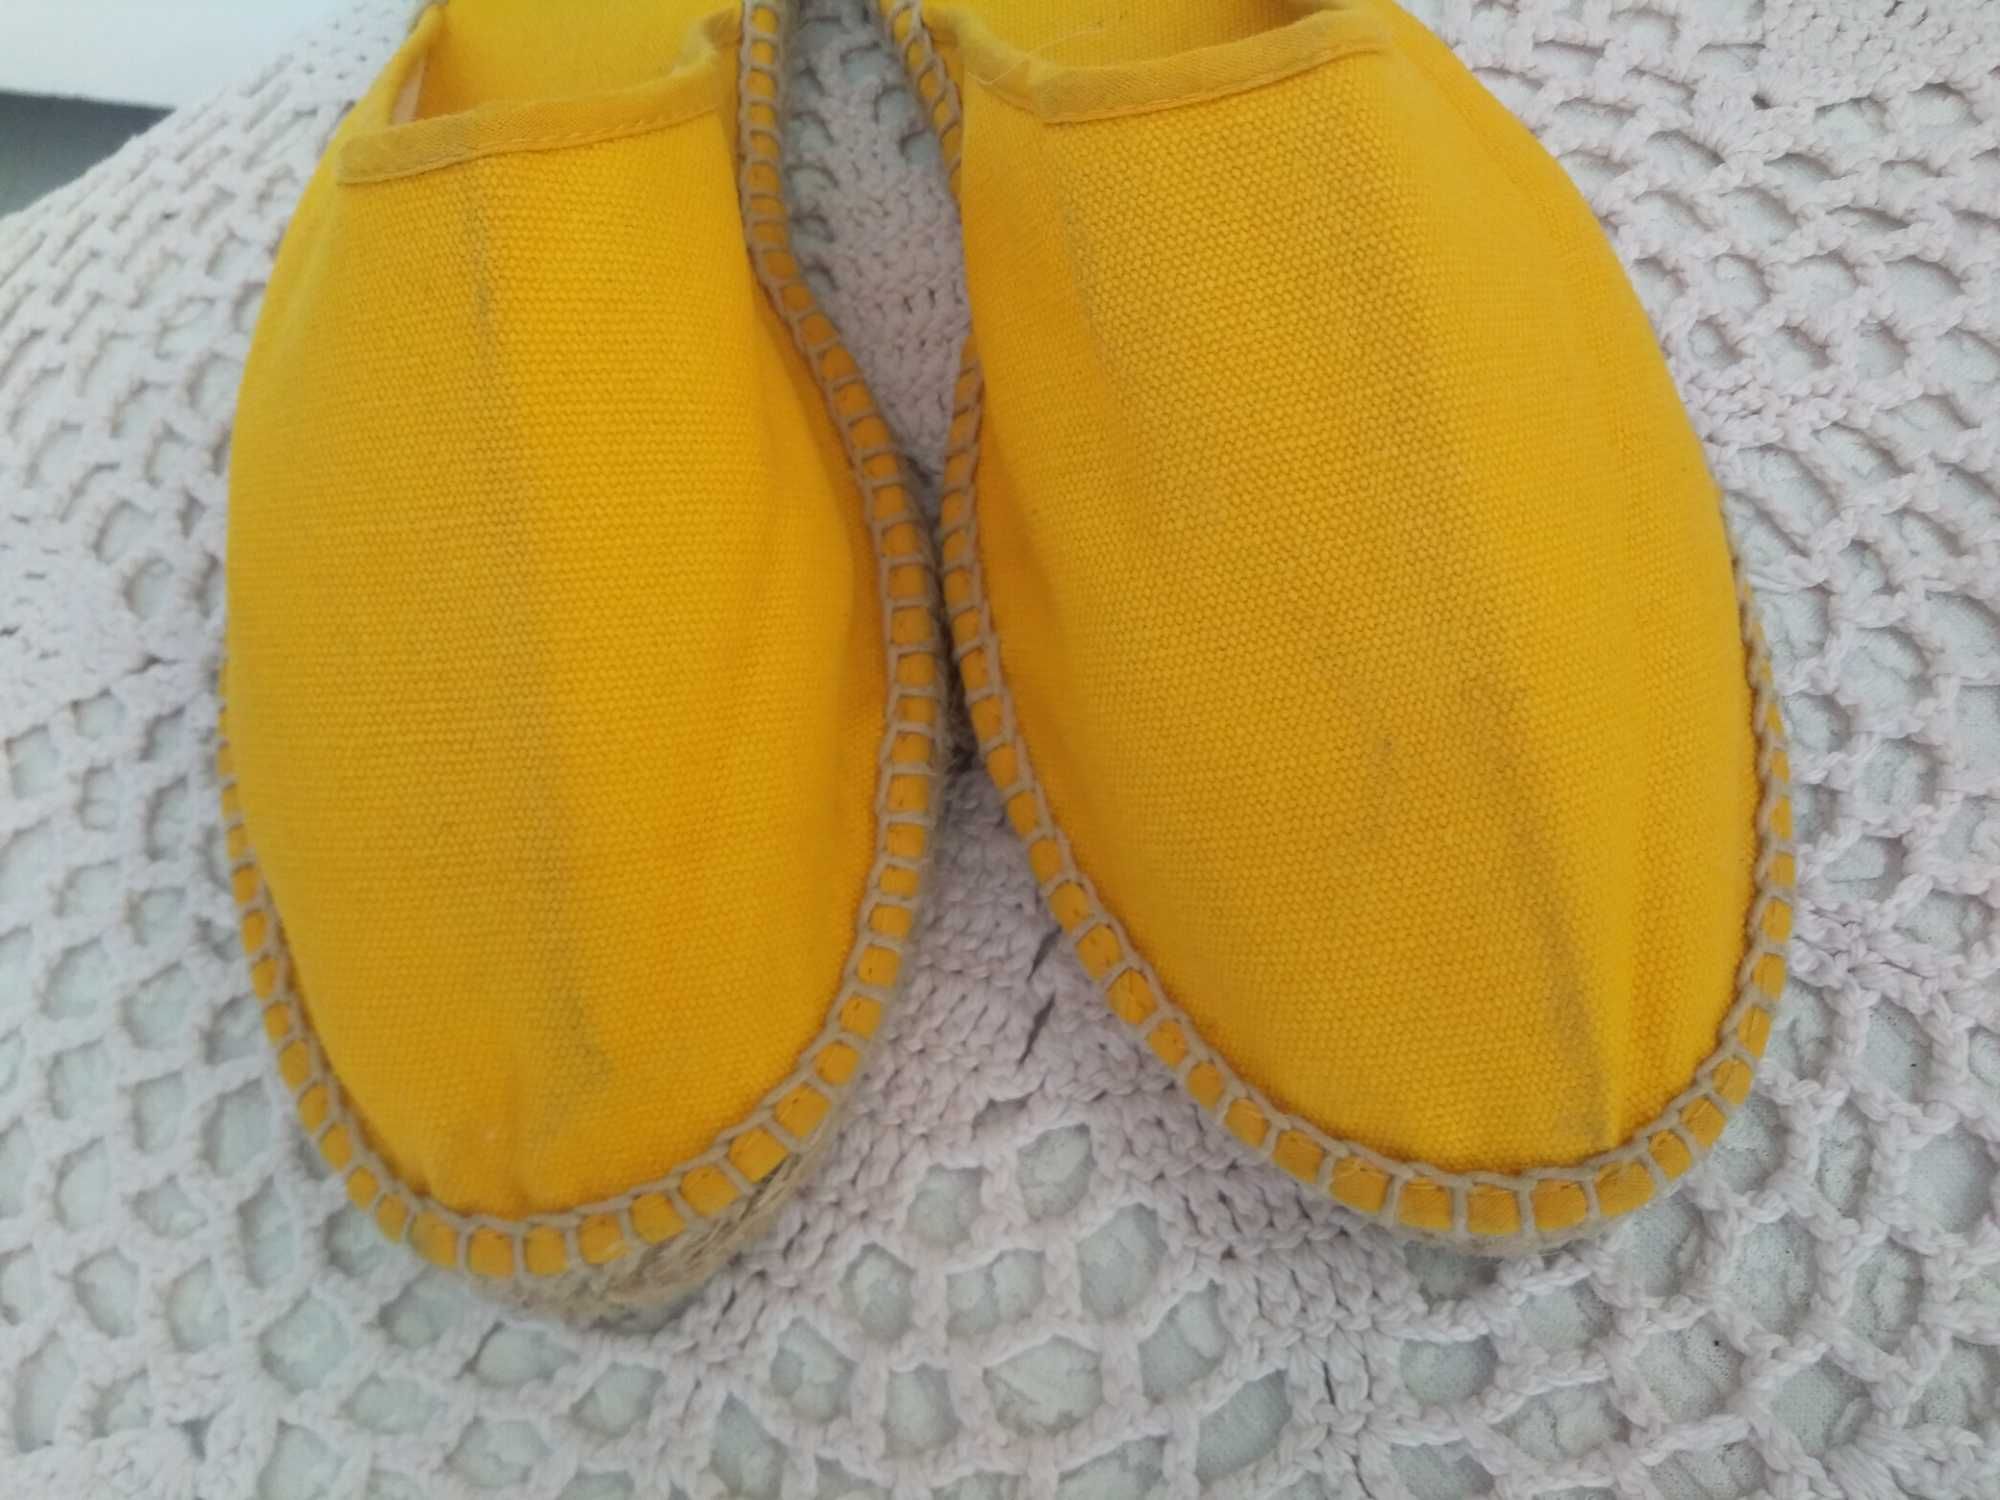 NOWE klapki lniane szmaciane żółte sandały letnie buty damskie 36